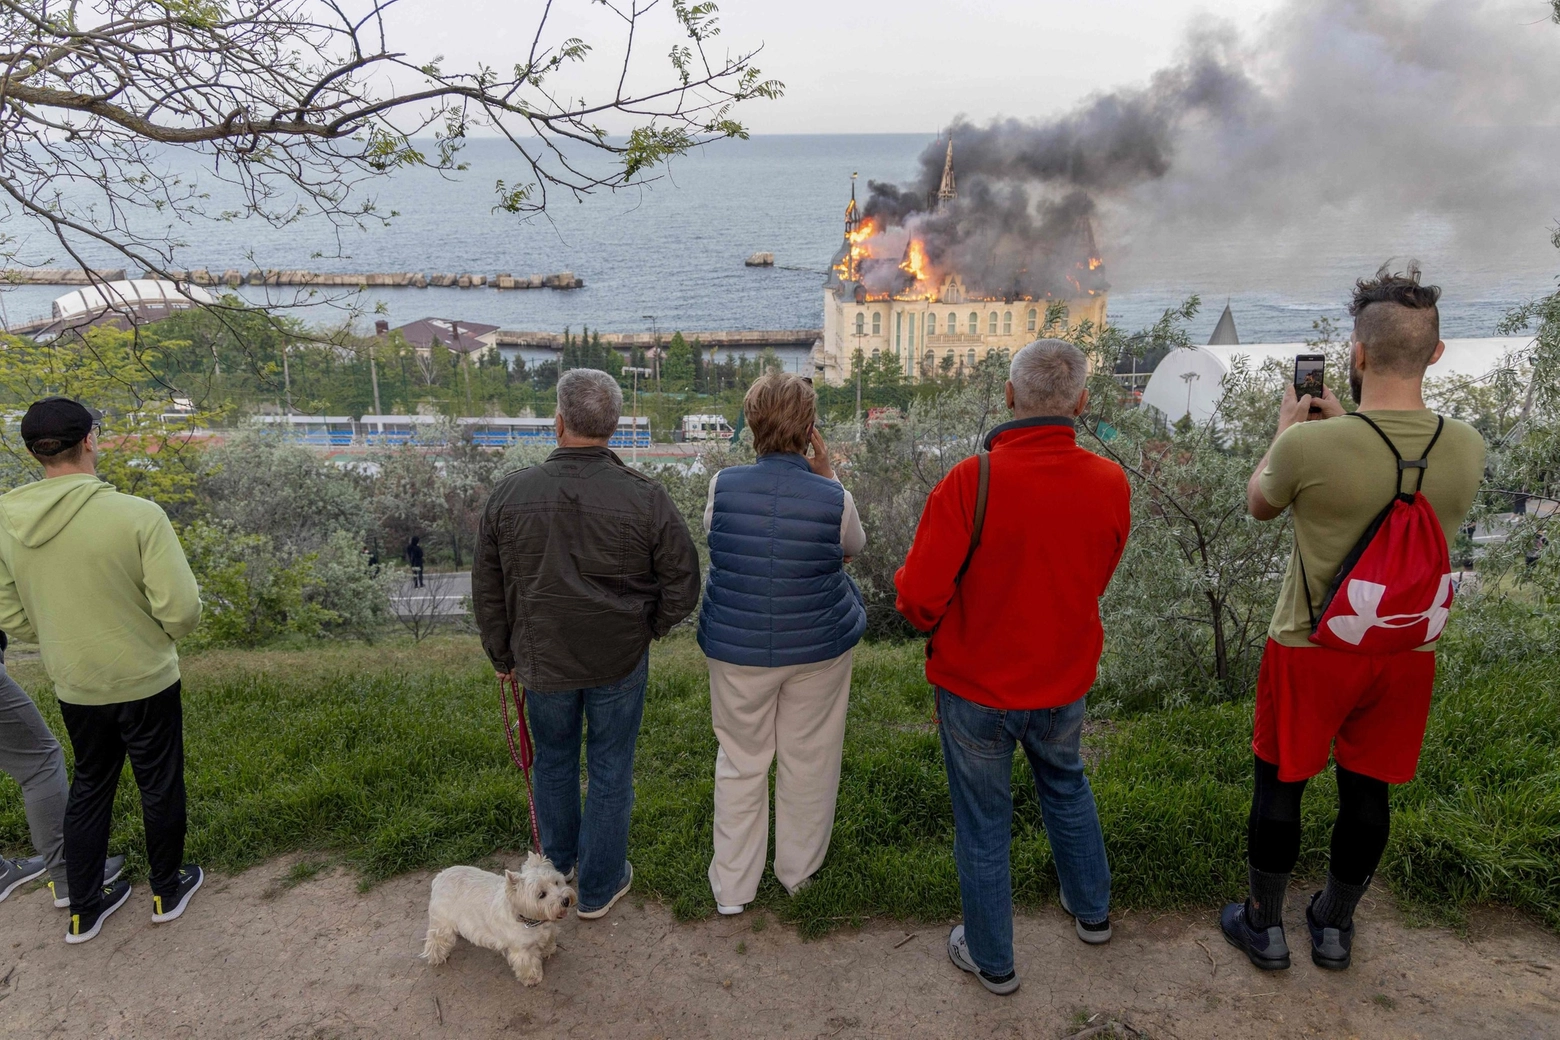 Il castello di Kivalov, conosciuto come castello di Harry Potter, in fiamme a Odessa